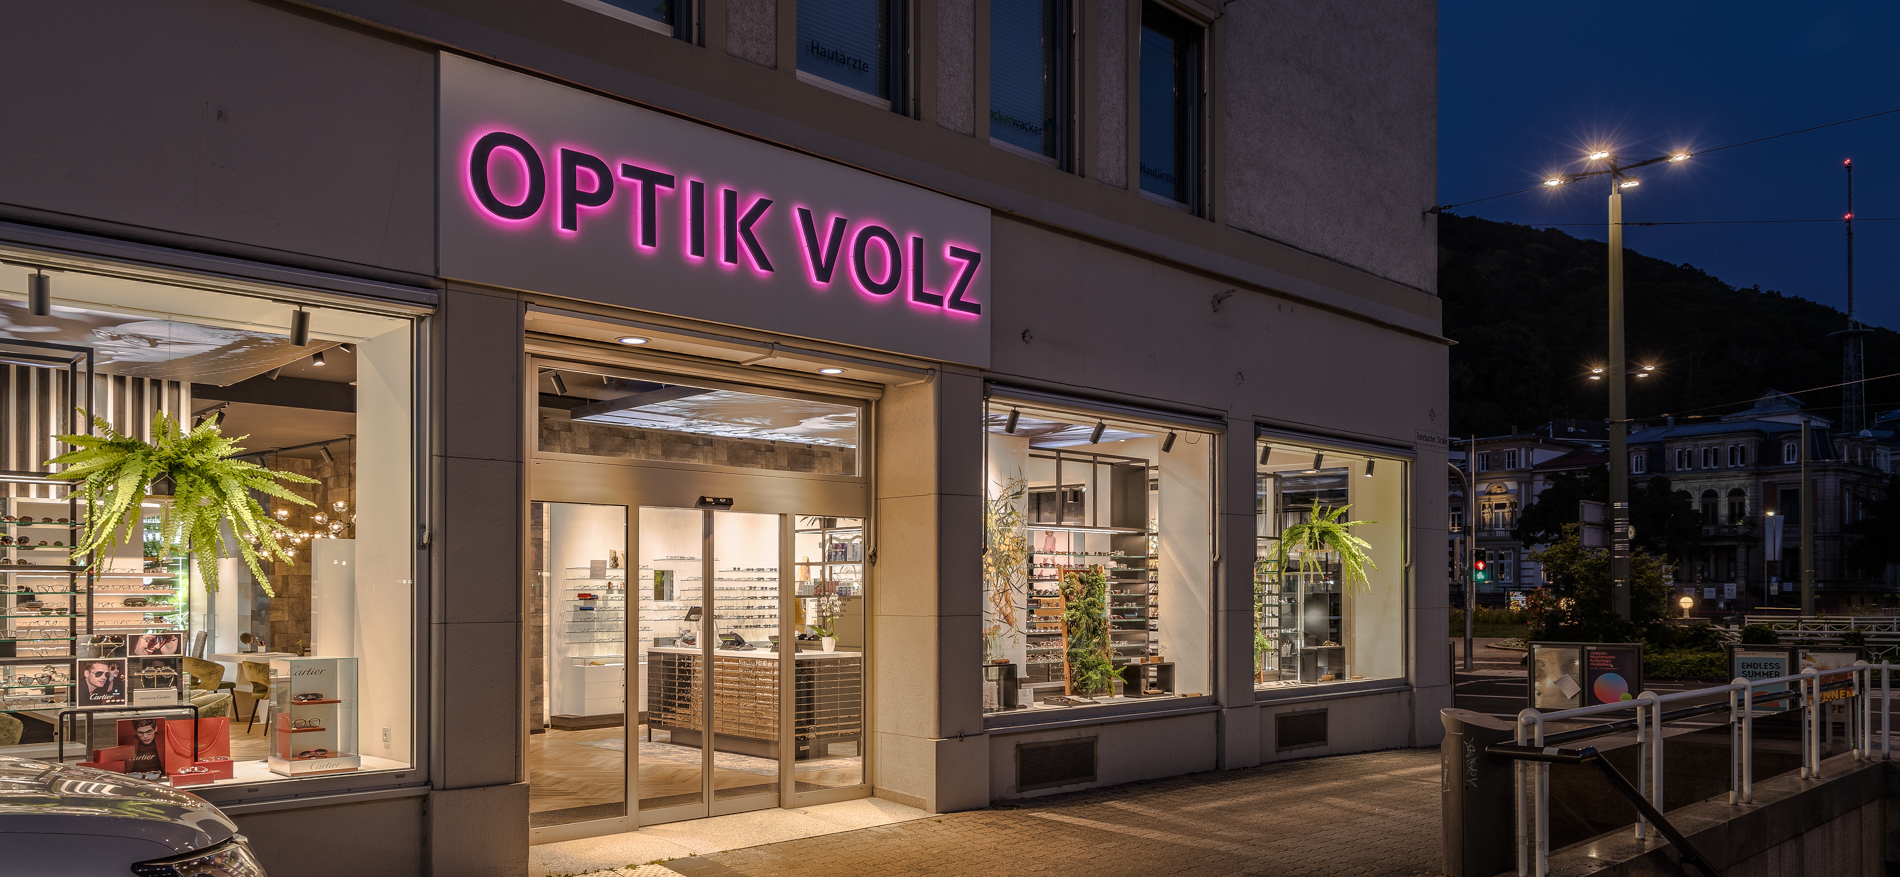 Volz Optik | Heidelberg (DE) - Optik